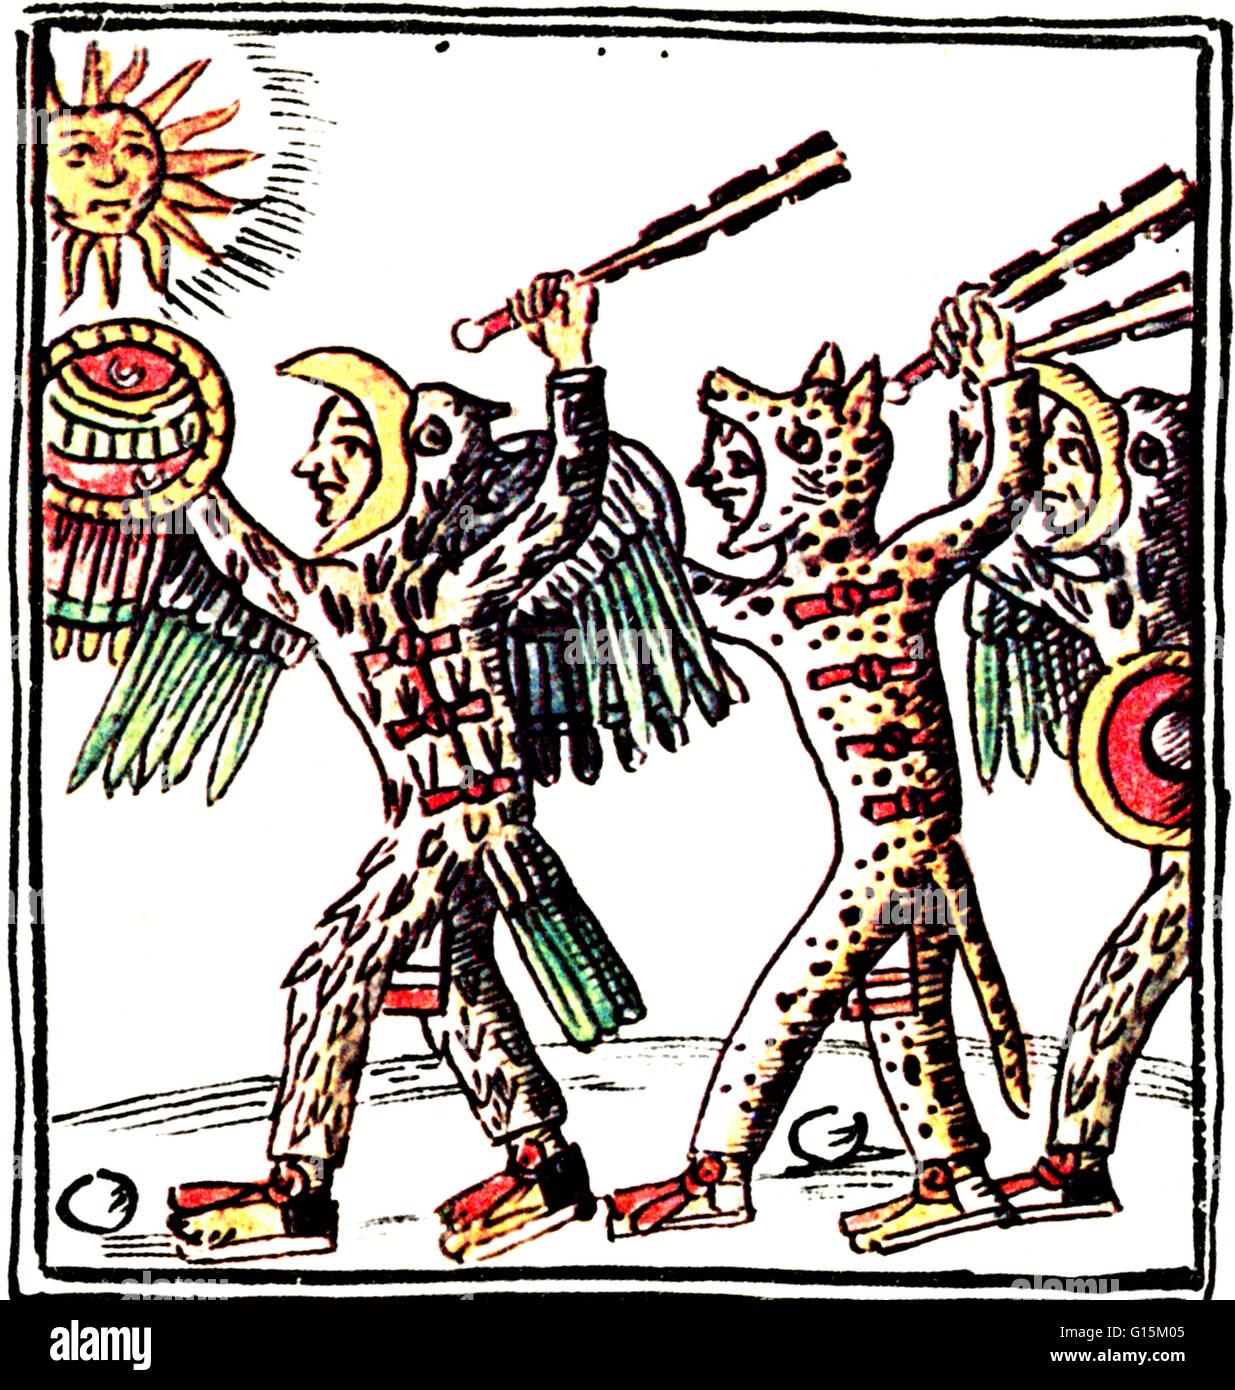 Los guerreros aztecas que demostraron los más valentía y que luchó y se convirtió en águila o jaguar o guerreros. De todos los guerreros Aztecas, eran los más temidos. Tanto el jaguar y el águila, guerreros Aztecas llevaban distinguir cascos y uniformes. Foto de stock